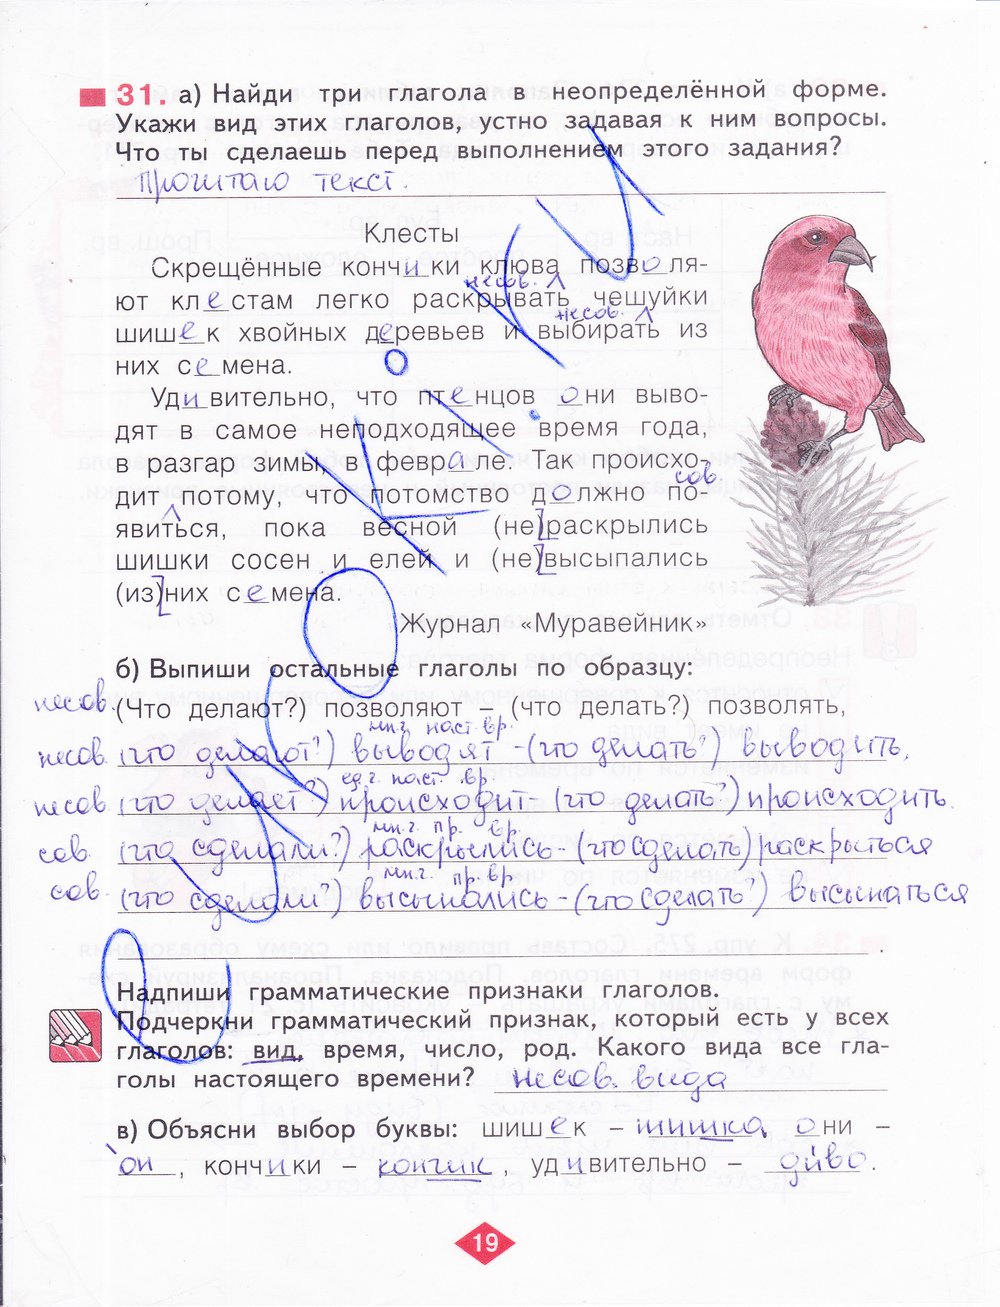 гдз 4 класс рабочая тетрадь часть 2 страница 19 русский язык Нечаева, Воскресенская